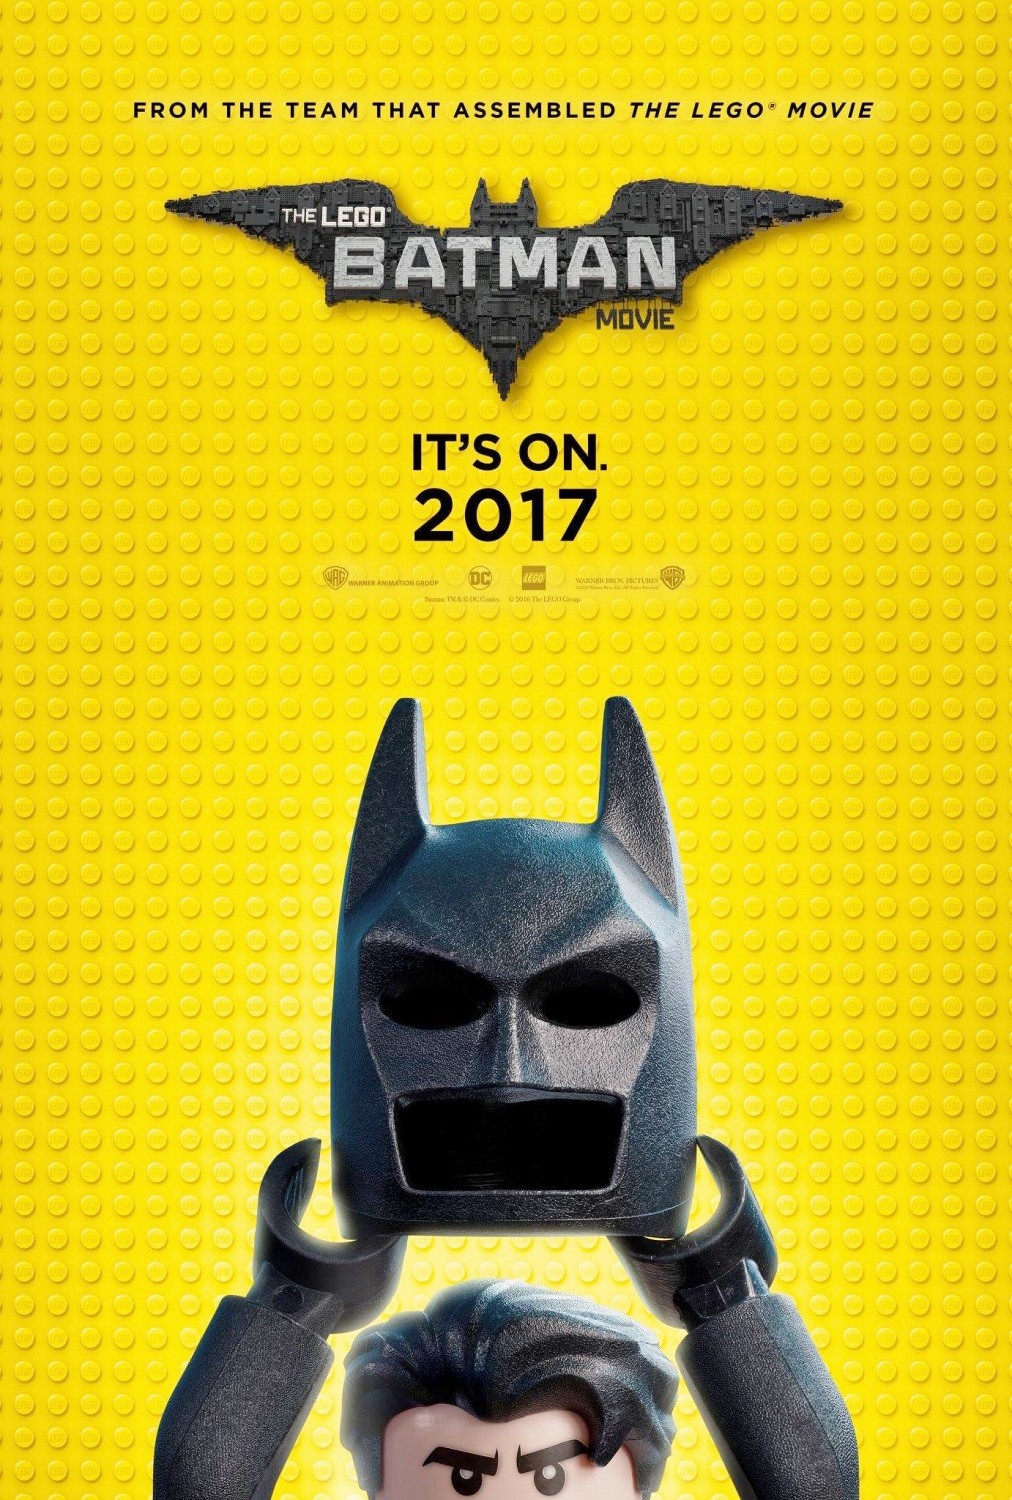 lego-batman-il-film-nuovo-trailer-e-locandina-dal-comic-con-2016.jpg